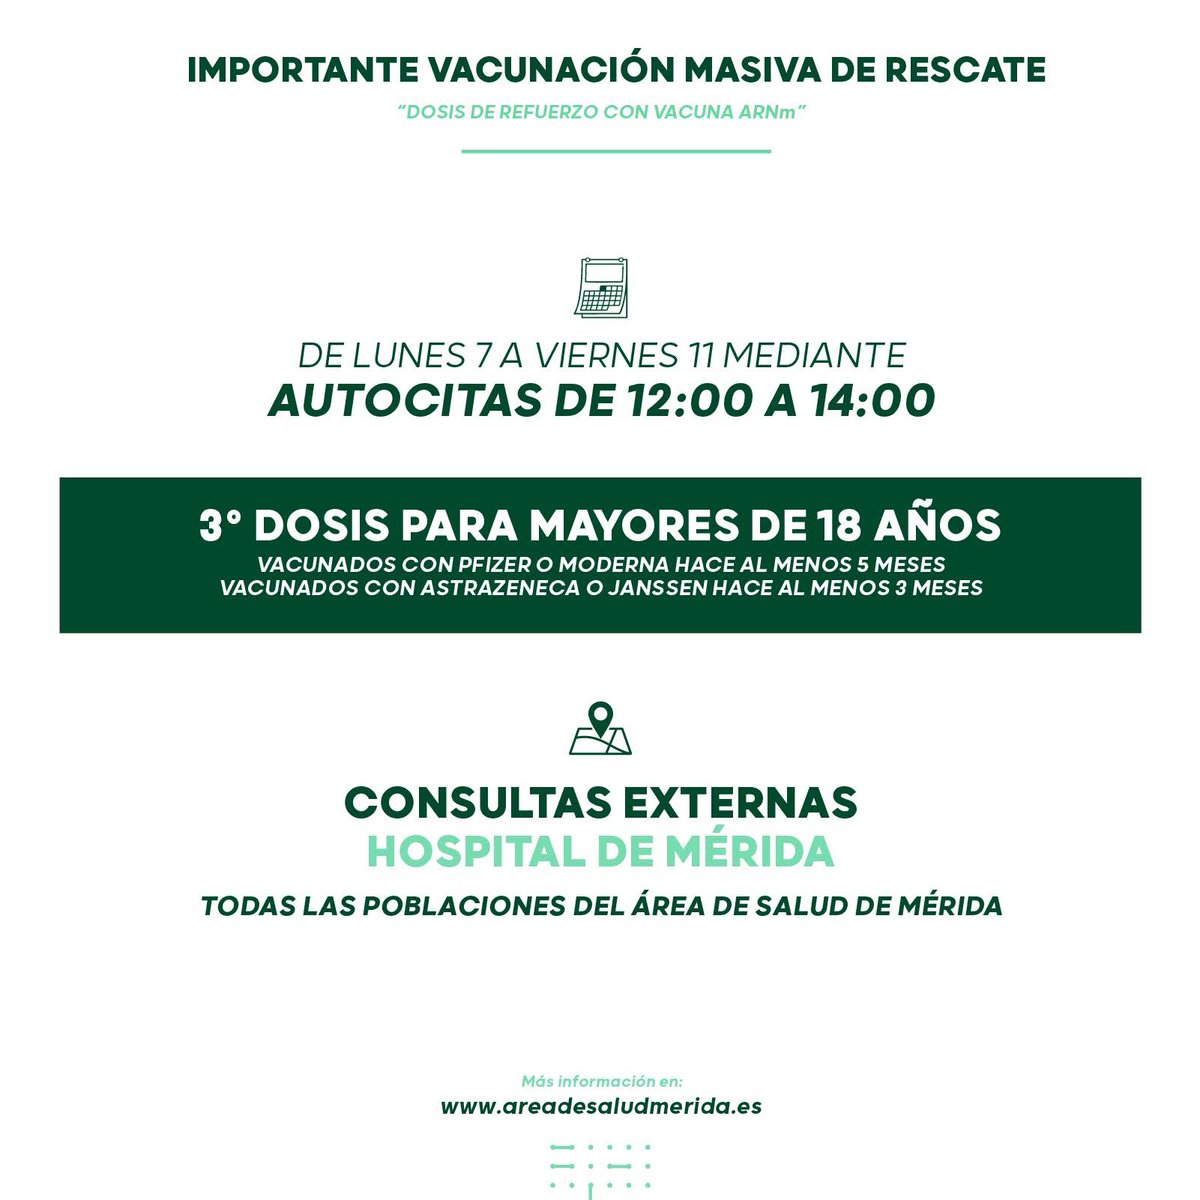 #ULTIMAHORA #NOVEDADES 

📢 ABIERTAS LAS AUTOCITA DE RESCATE PARA 3ª DOSIS A LOS MAYORES DE 18 AÑOS 📢

📅 Del LUNES 7 a VIERNES 11
⏰ De 12:00 a 14:00
📍Consultas externas en el Hospital de Mérida

Autocita ➡️ saludextremadura.ses.es/csonline/

#YoMeVacuno #YoMeVacunoSeguro #merida #asm